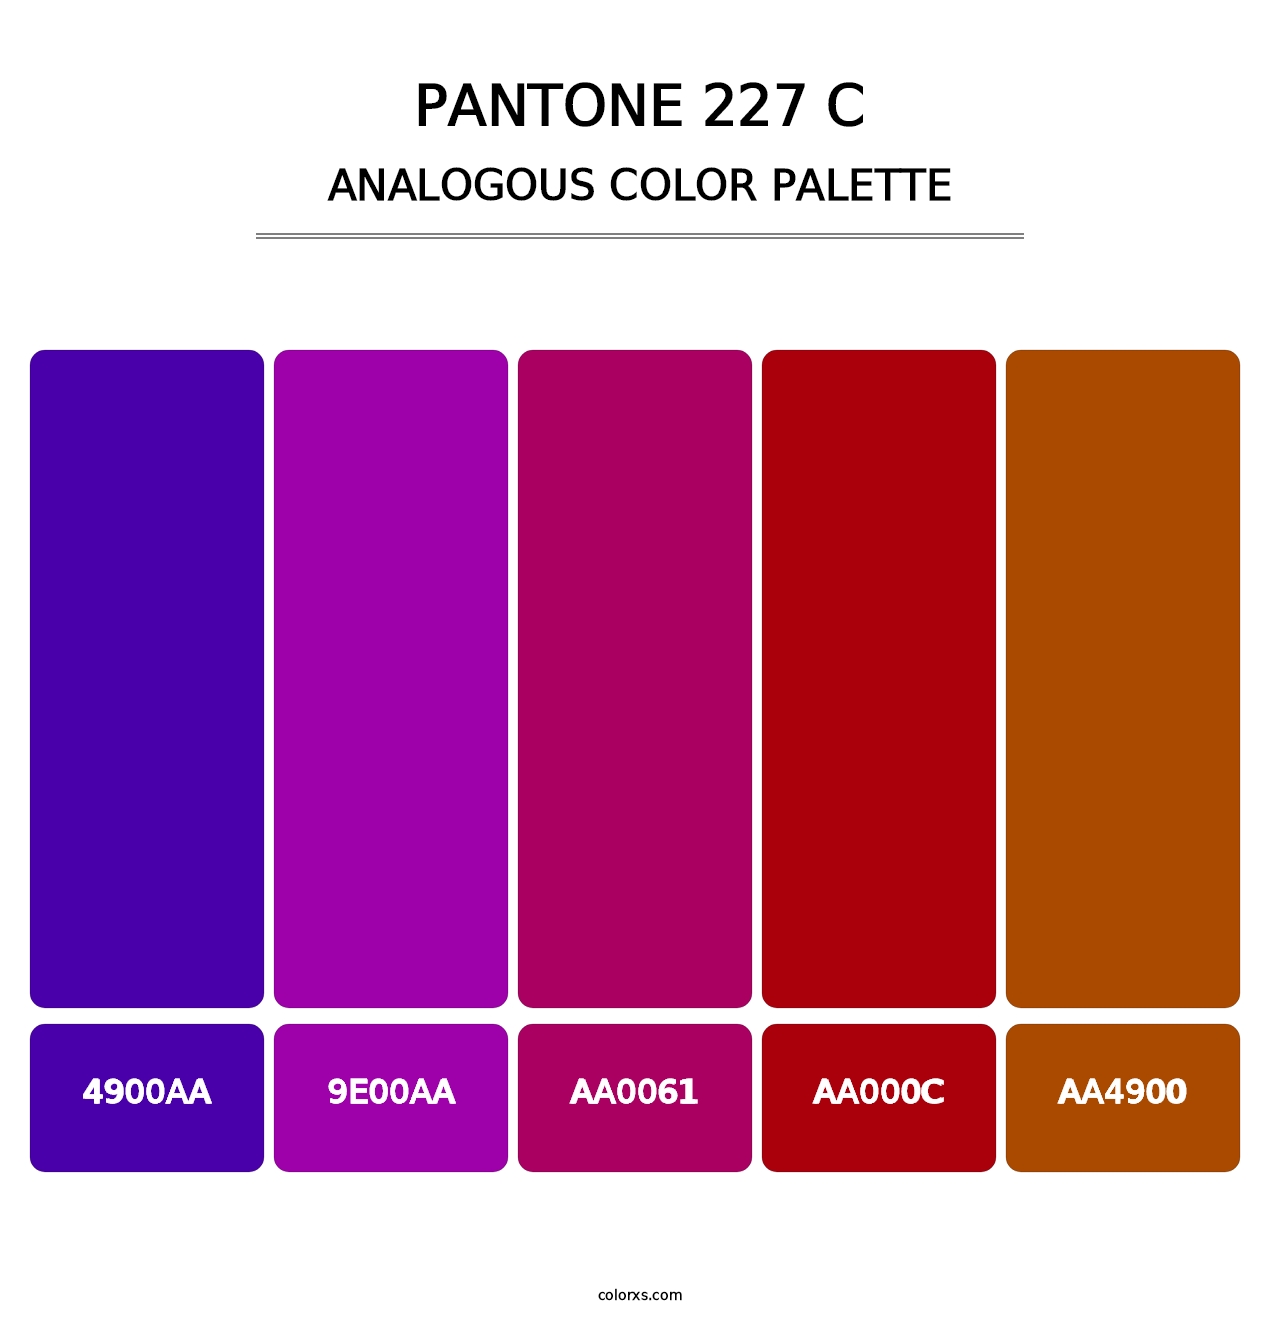 PANTONE 227 C - Analogous Color Palette